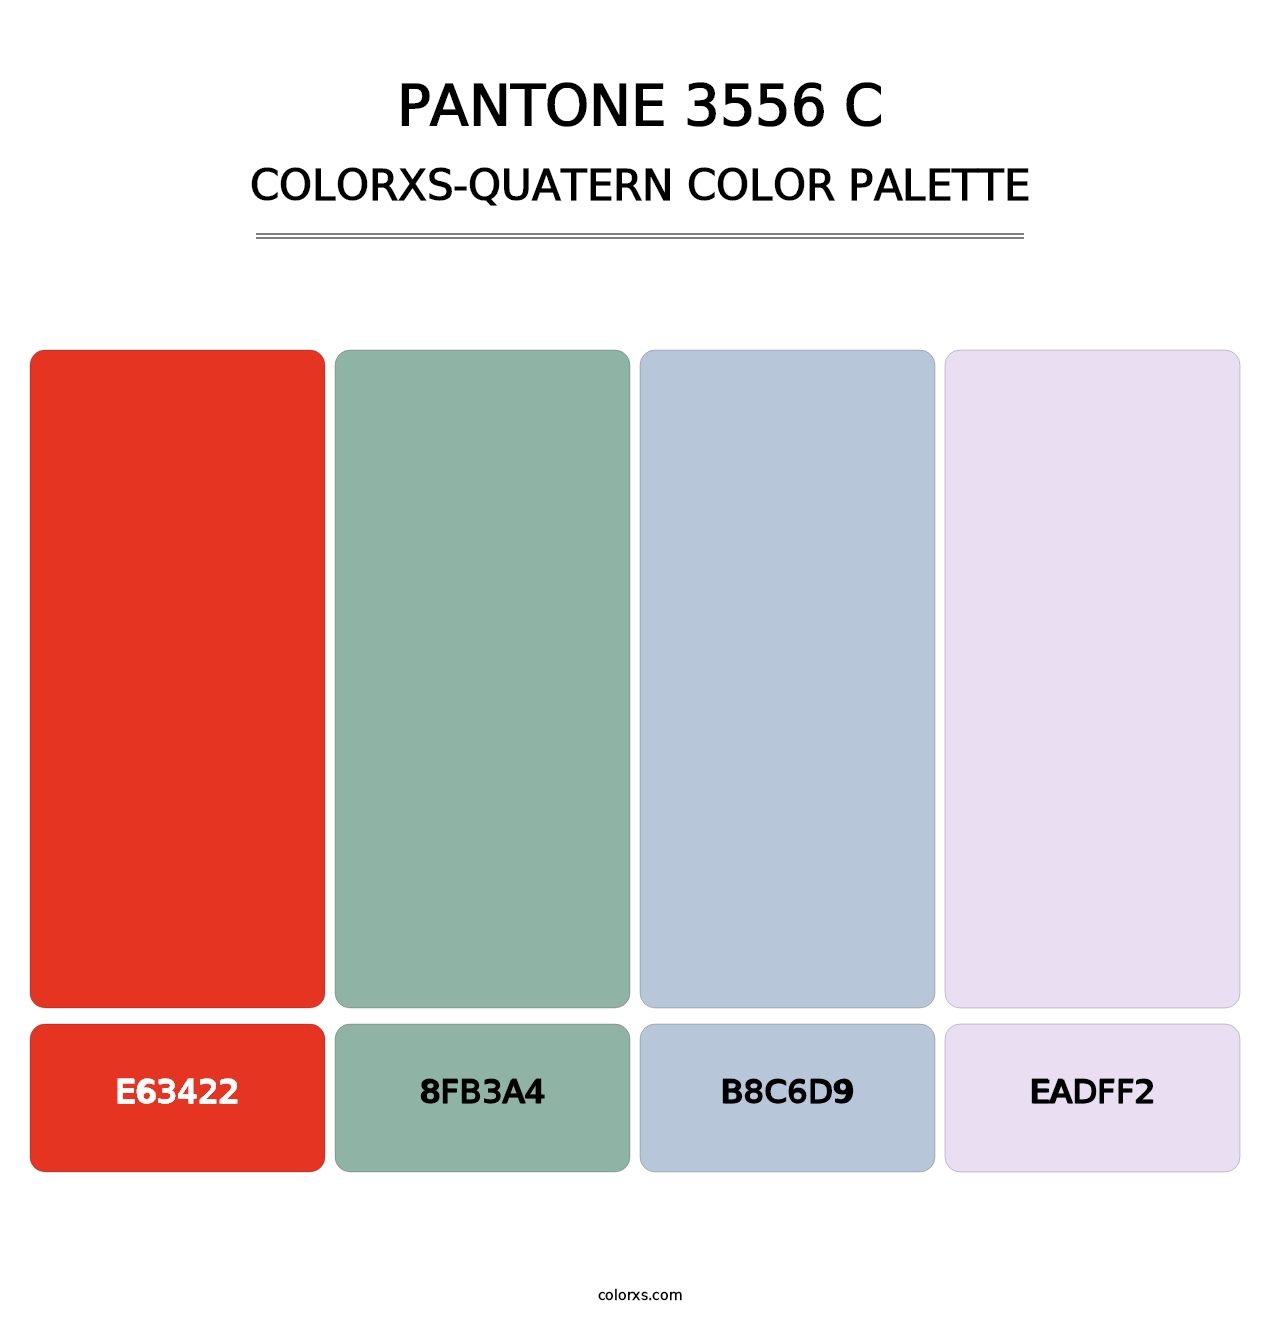 PANTONE 3556 C - Colorxs Quatern Palette